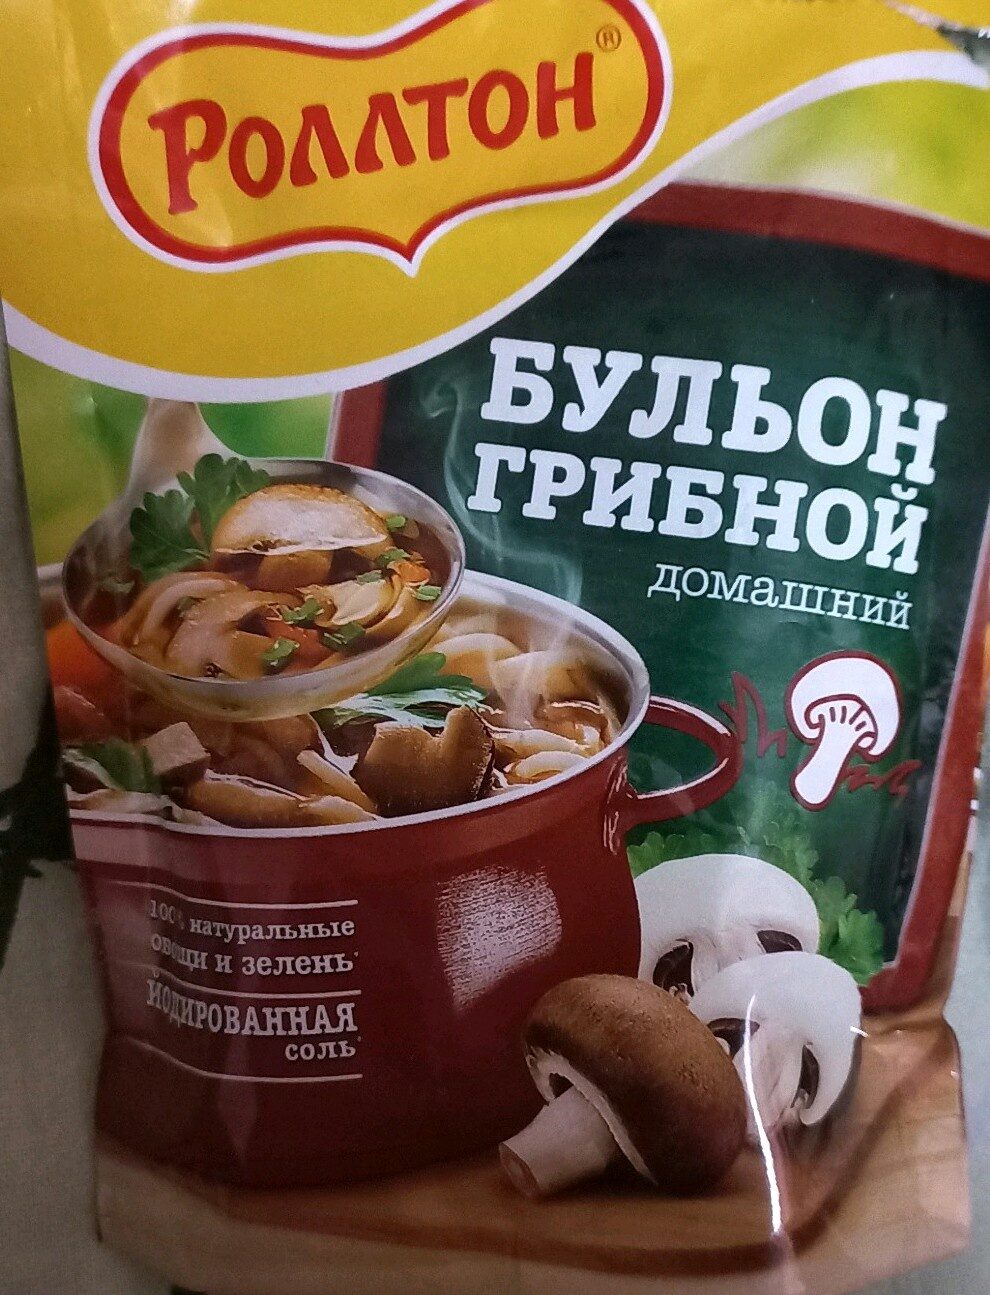 Бульон грибной - Product - ru